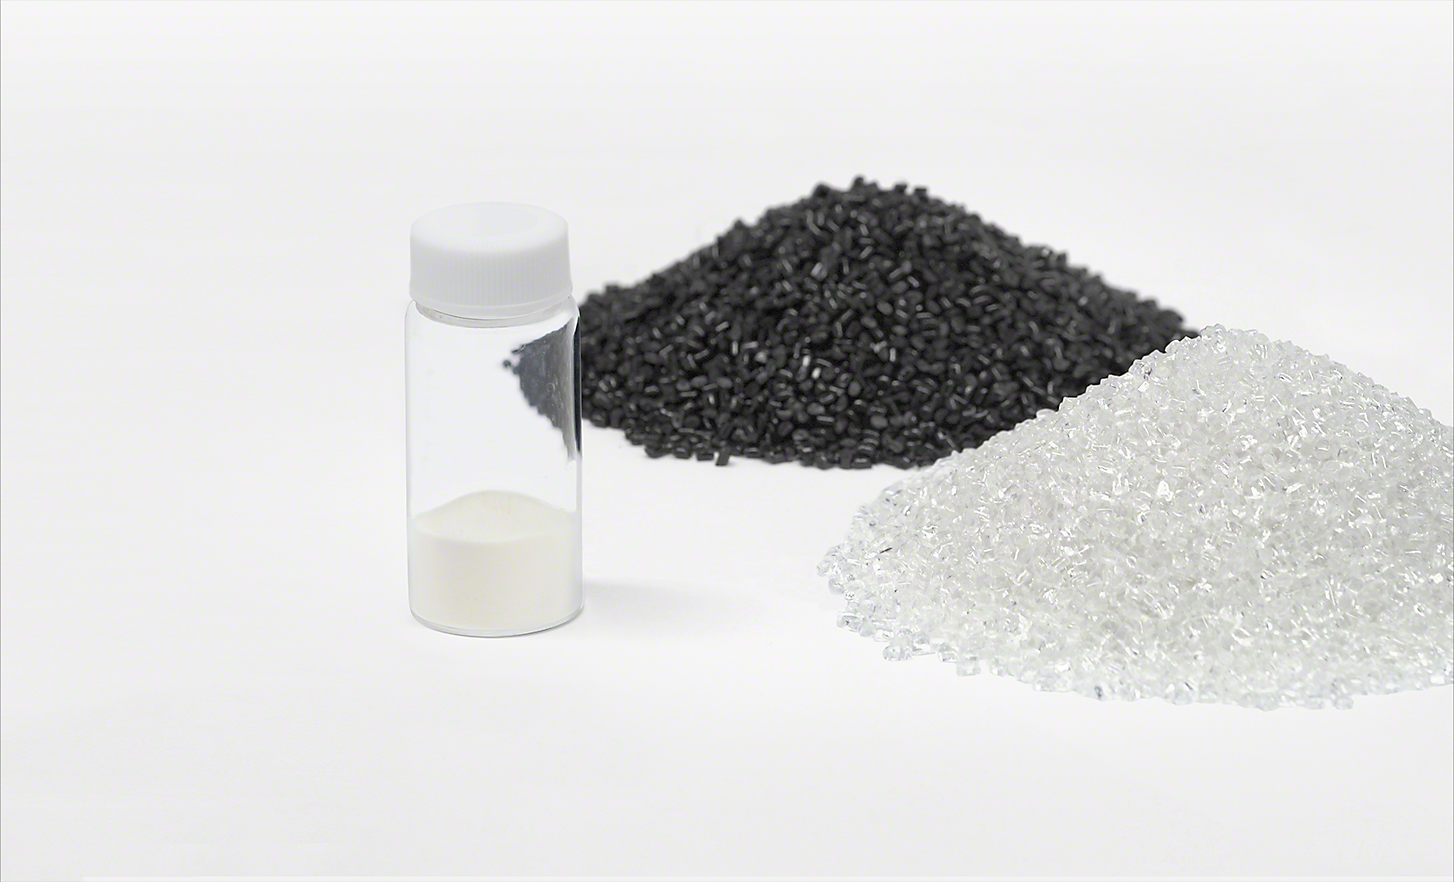 En ampulle med resirkulert plast sammen med en stabel av svarte, og en stabel av hvite plastfragmenter